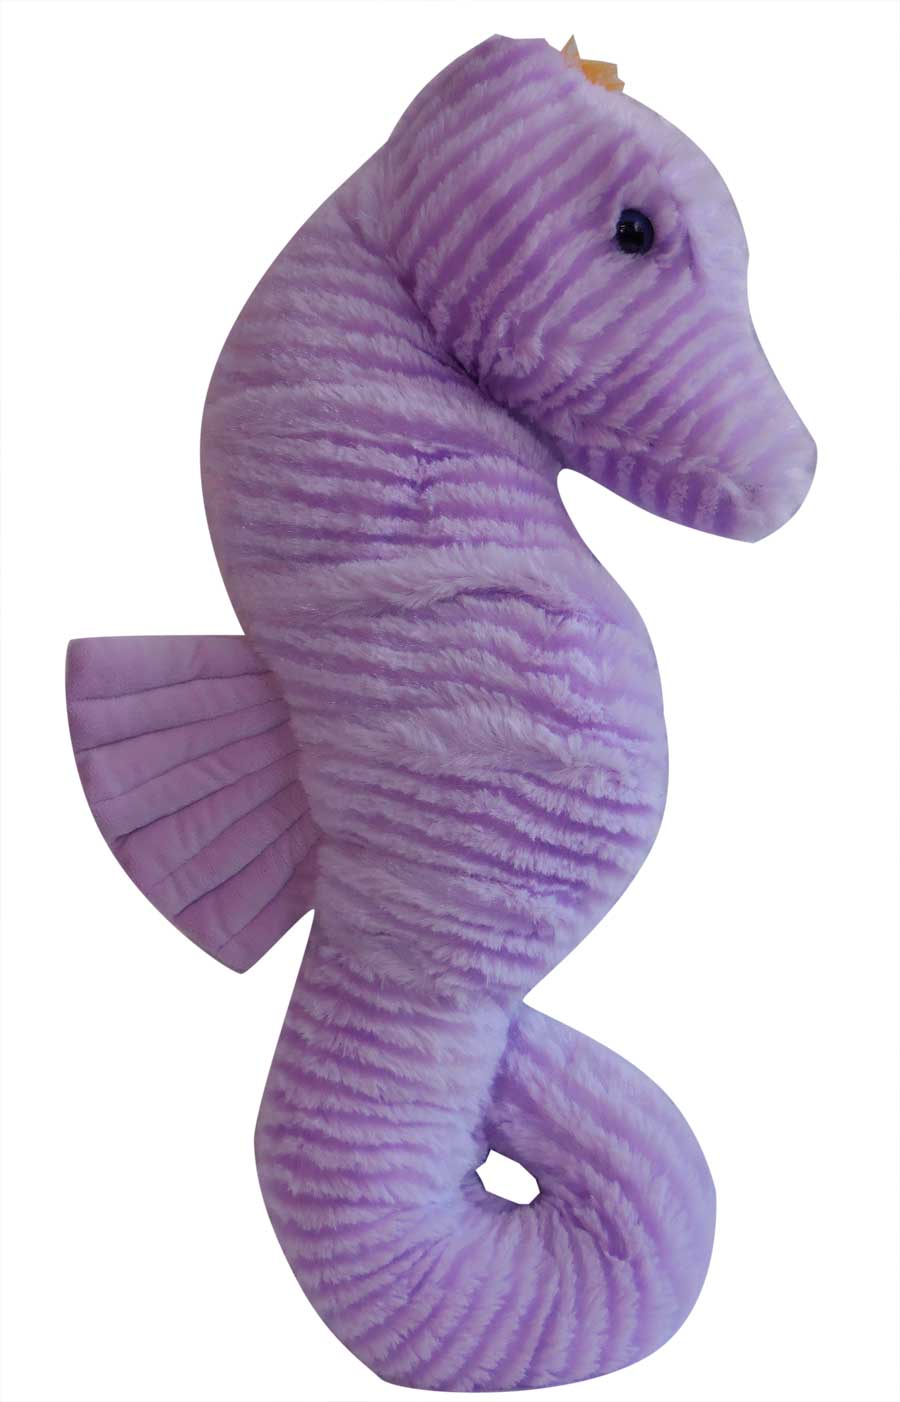 purple seahorse species